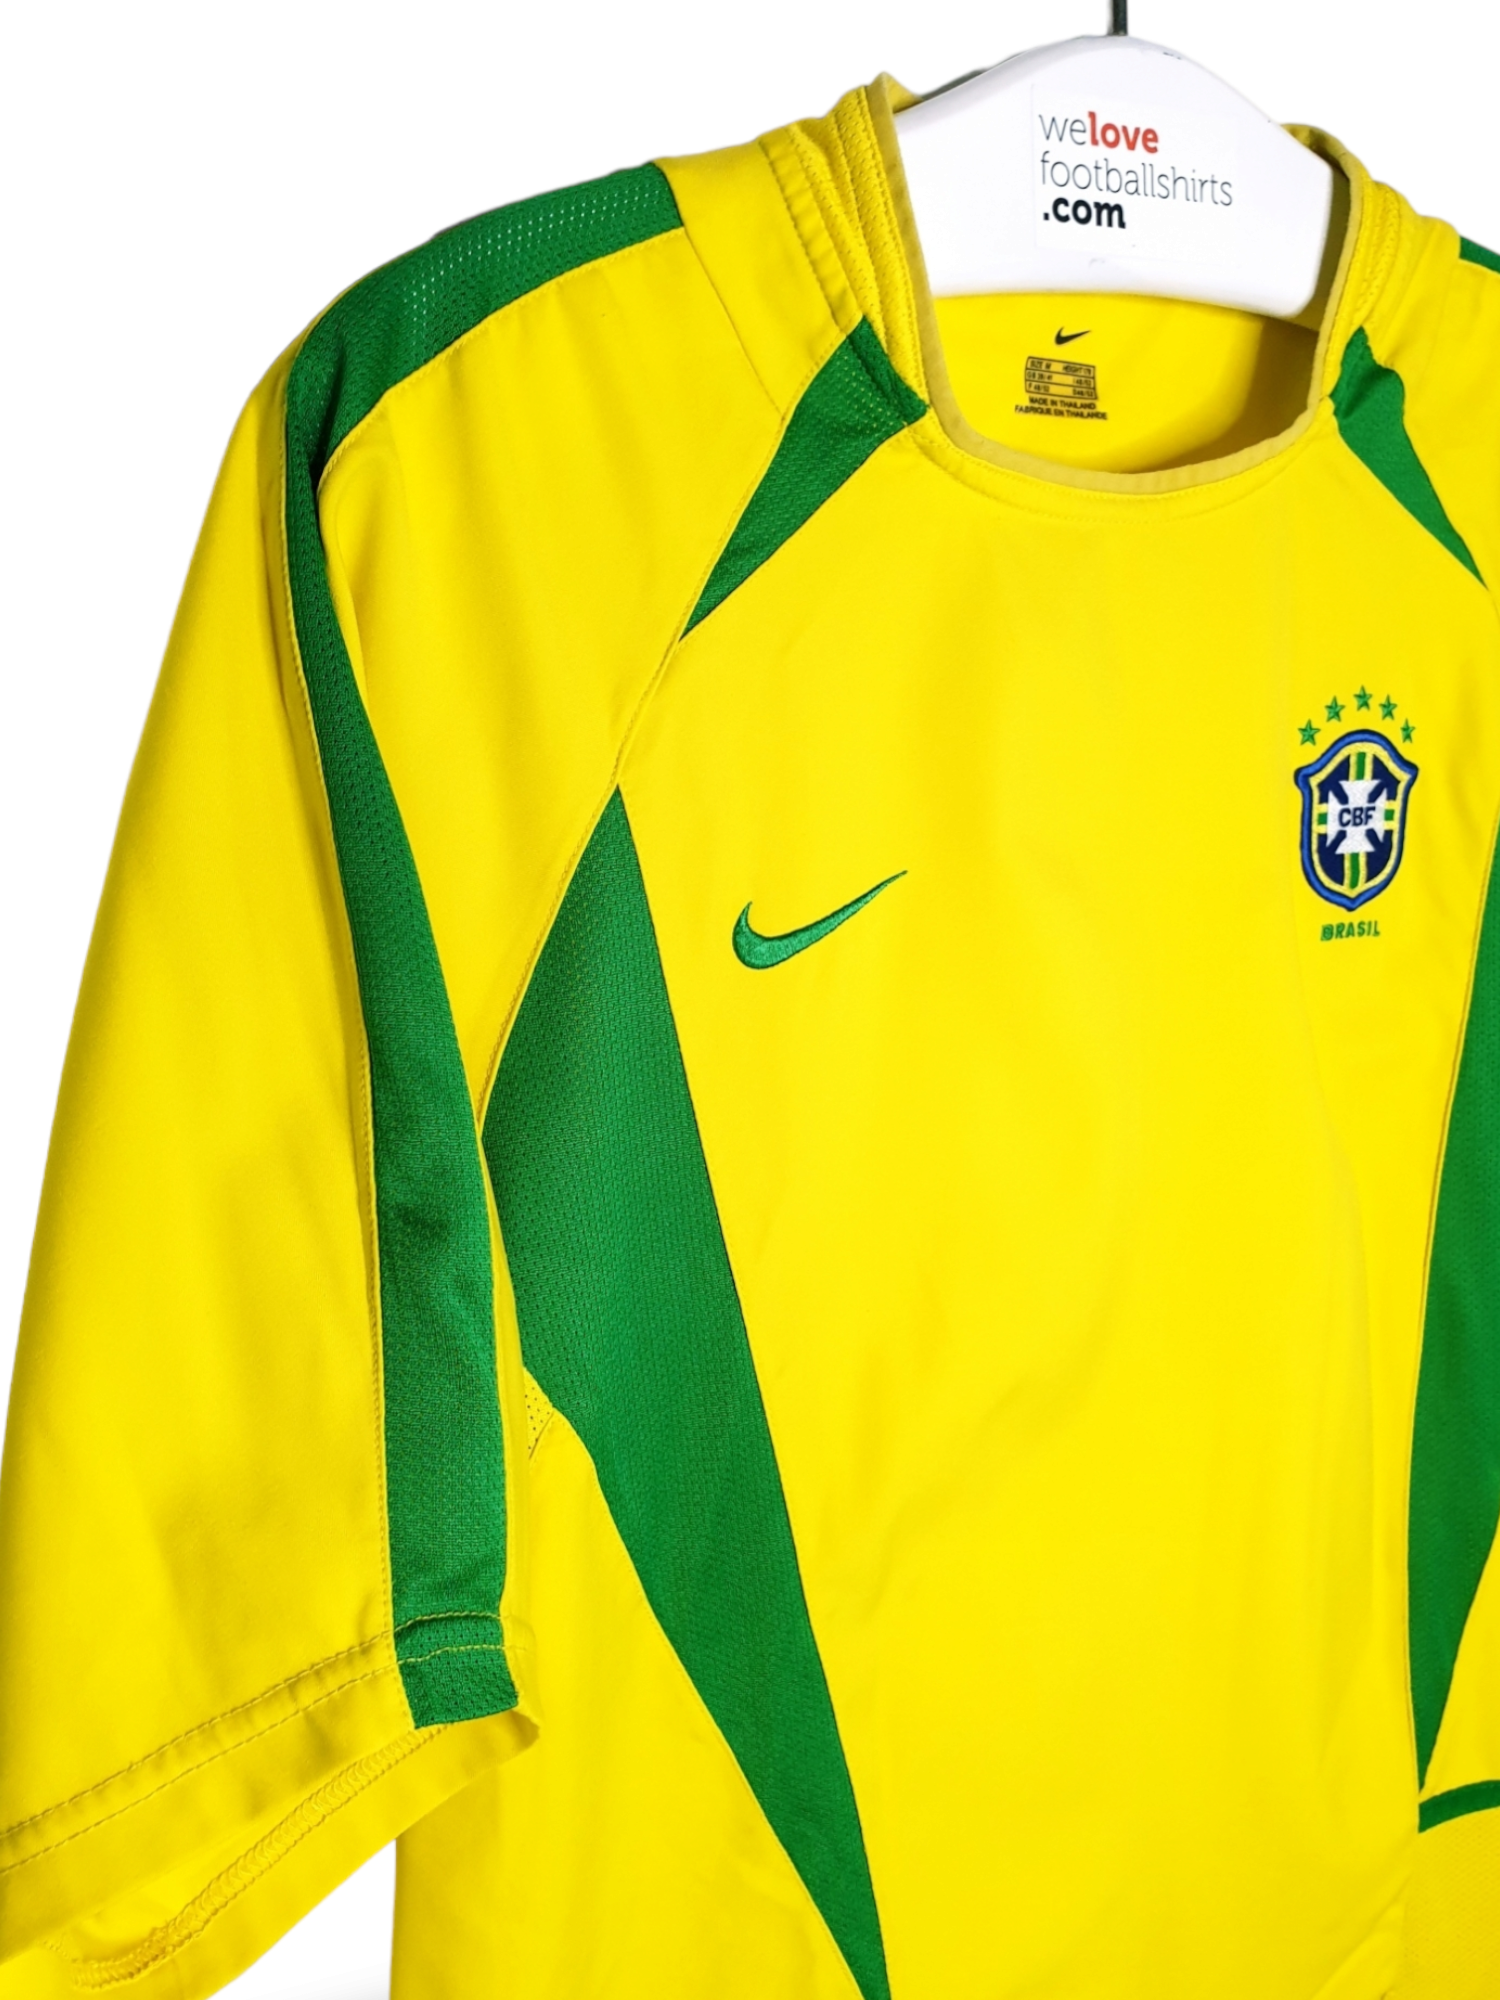 BRAZIL 2002 PRE MATCH HOME FOOTBALL SHIRT SOCCER SOCCER JERSEY NIKE sz L  MEN 